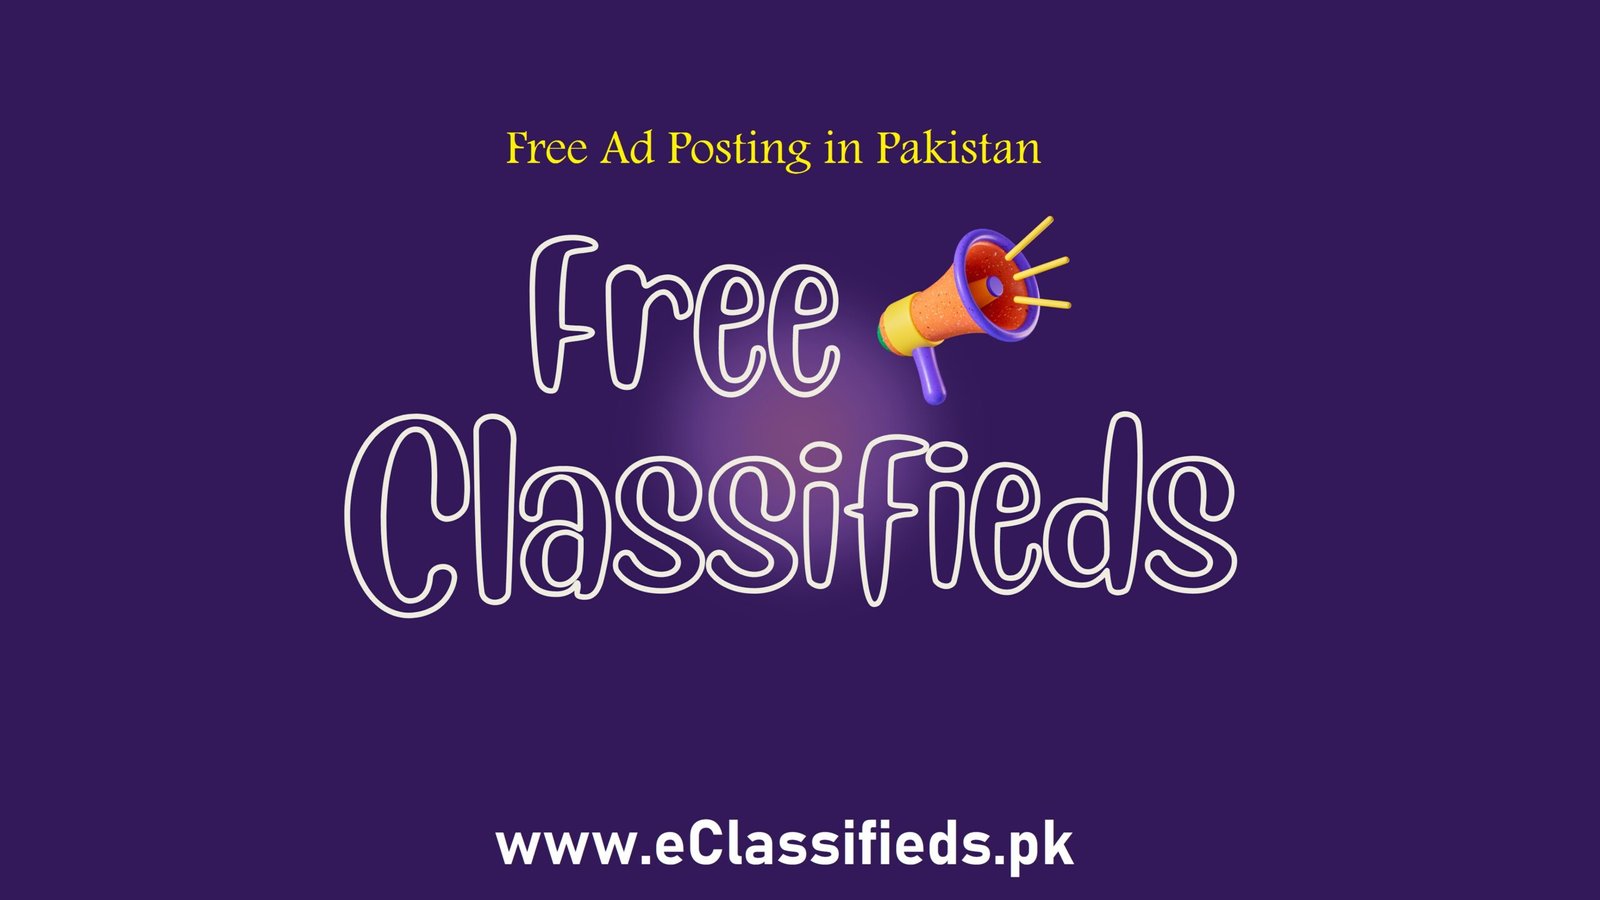 The Best Classified Ads Website in Pakistan: eclassifieds.pk